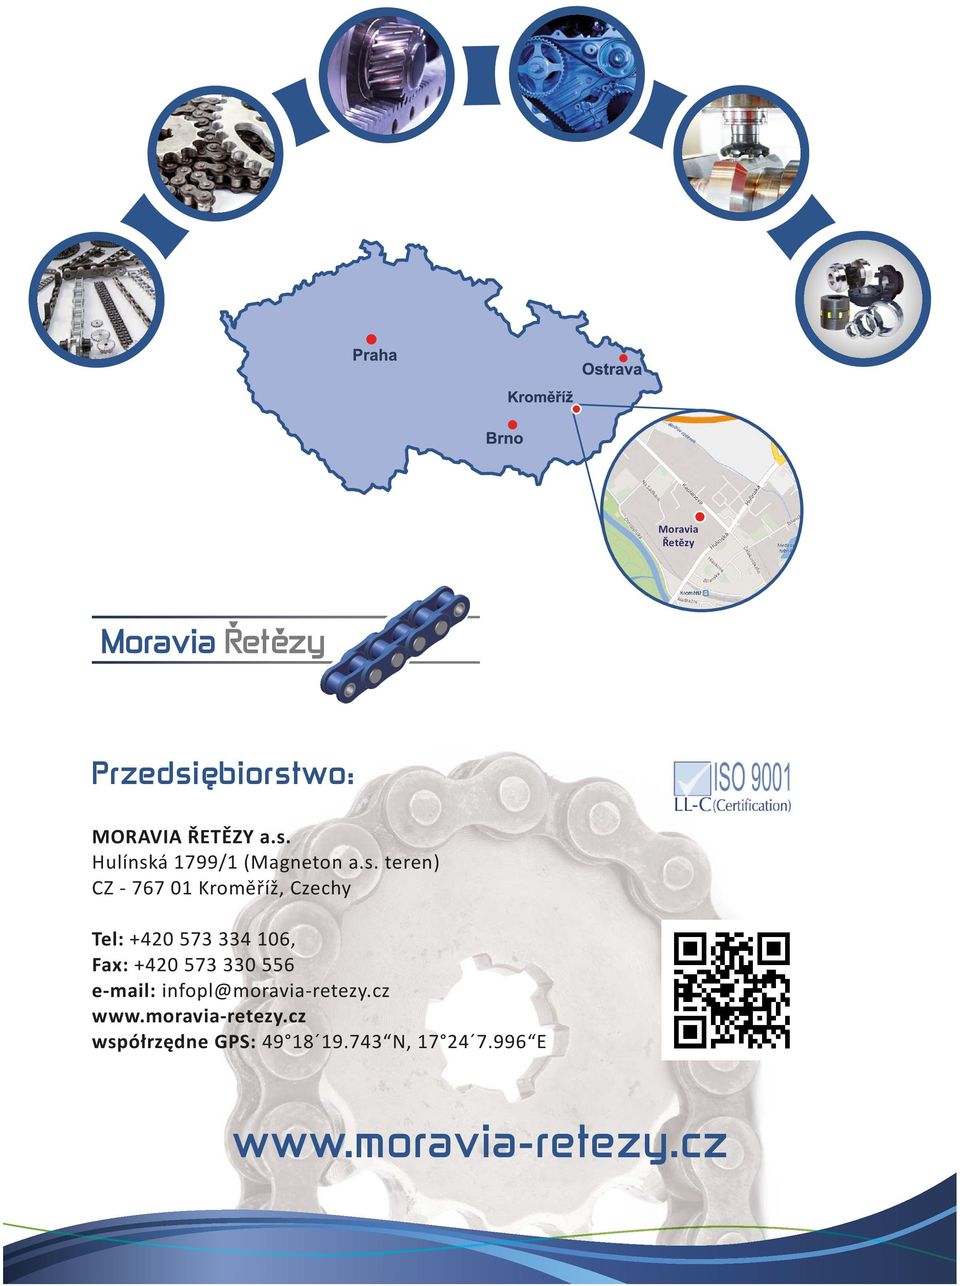 573 330 556 e-mail: infopl@moravia-retezy.cz www.moravia-retezy.cz współrzędne GPS: 49 18 19.